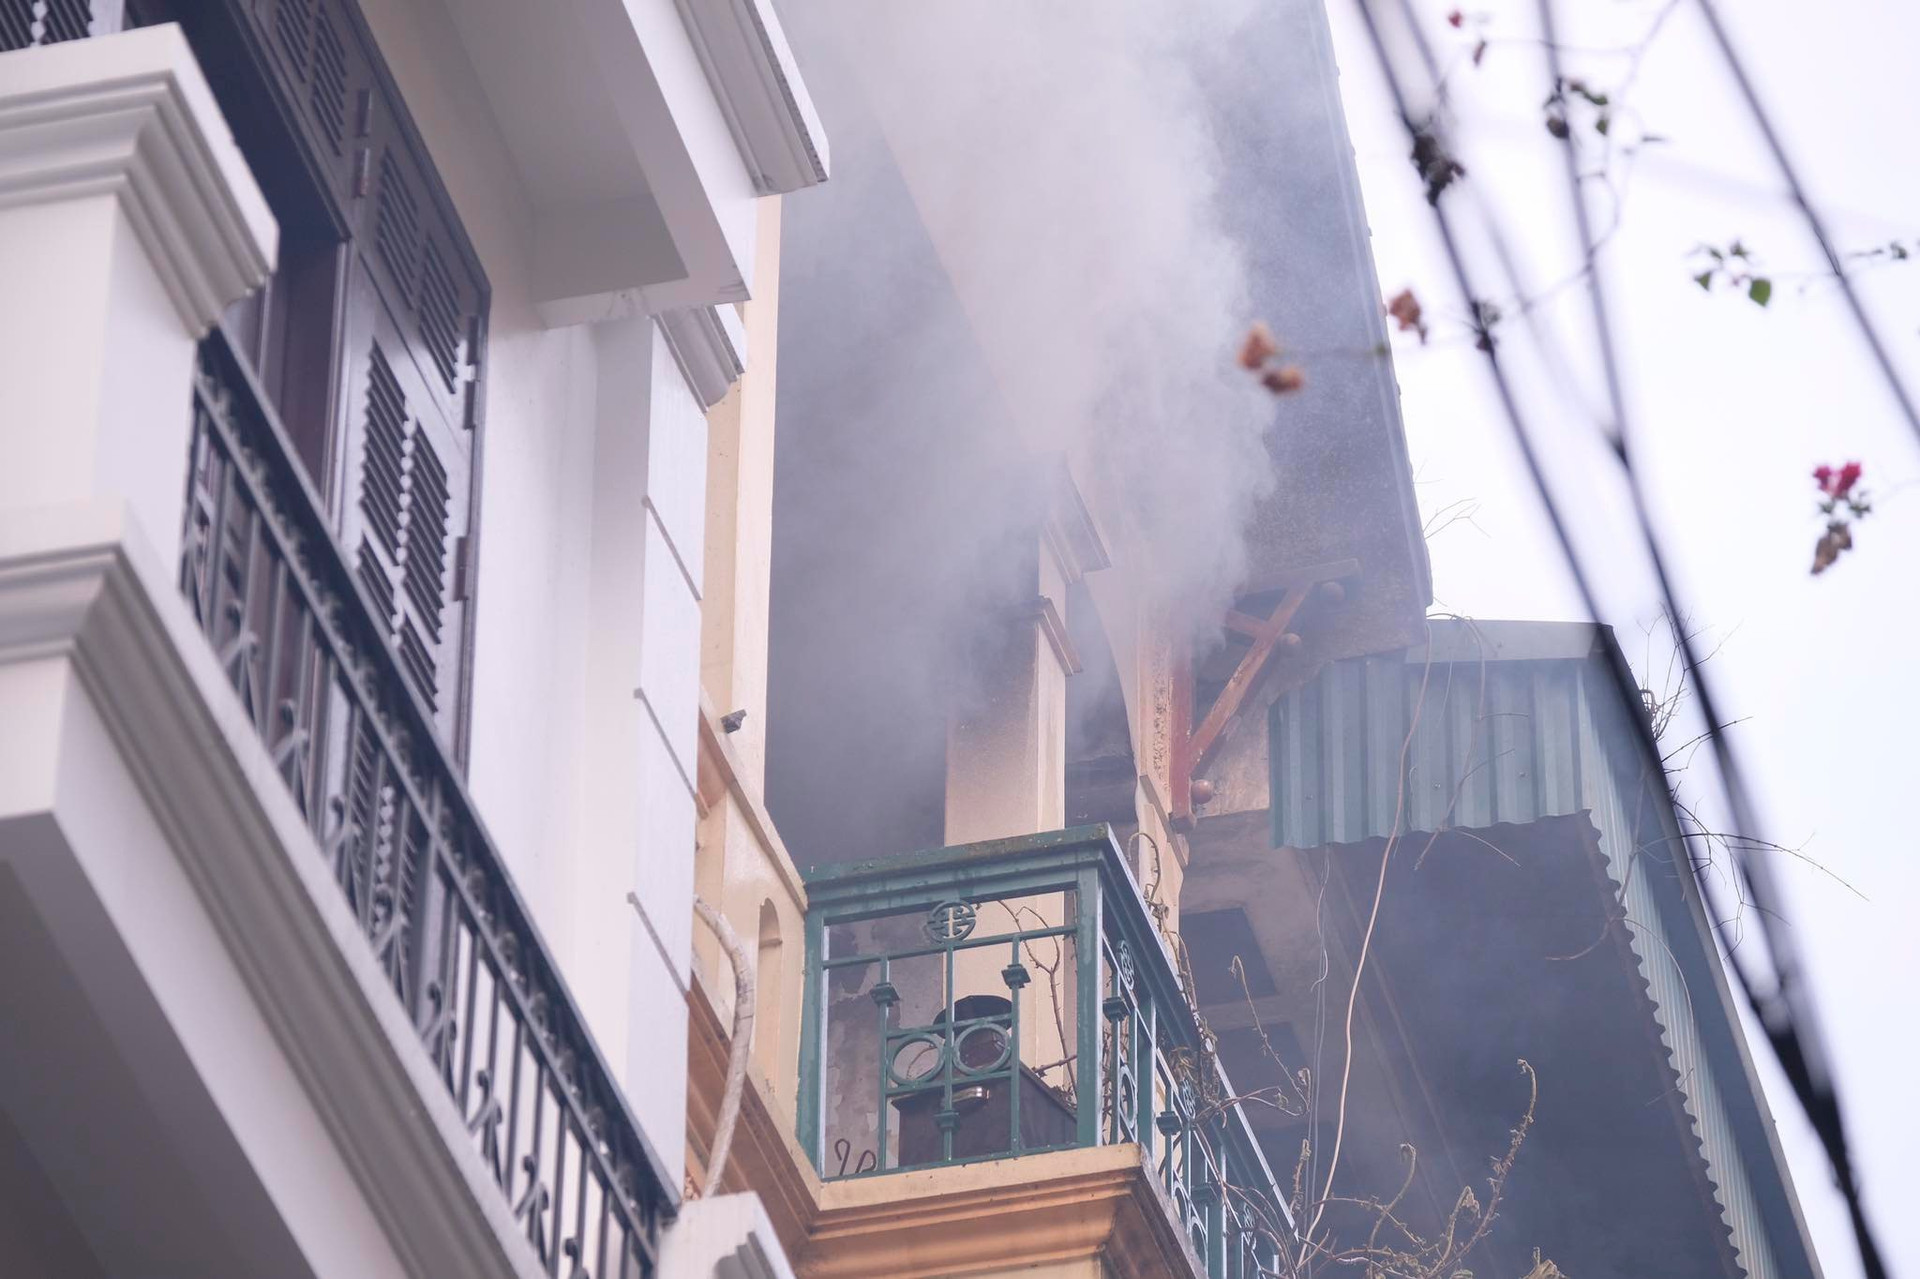 Cháy nhà 4 tầng ở Hà Nội, nhiều người hoảng loạn - 1